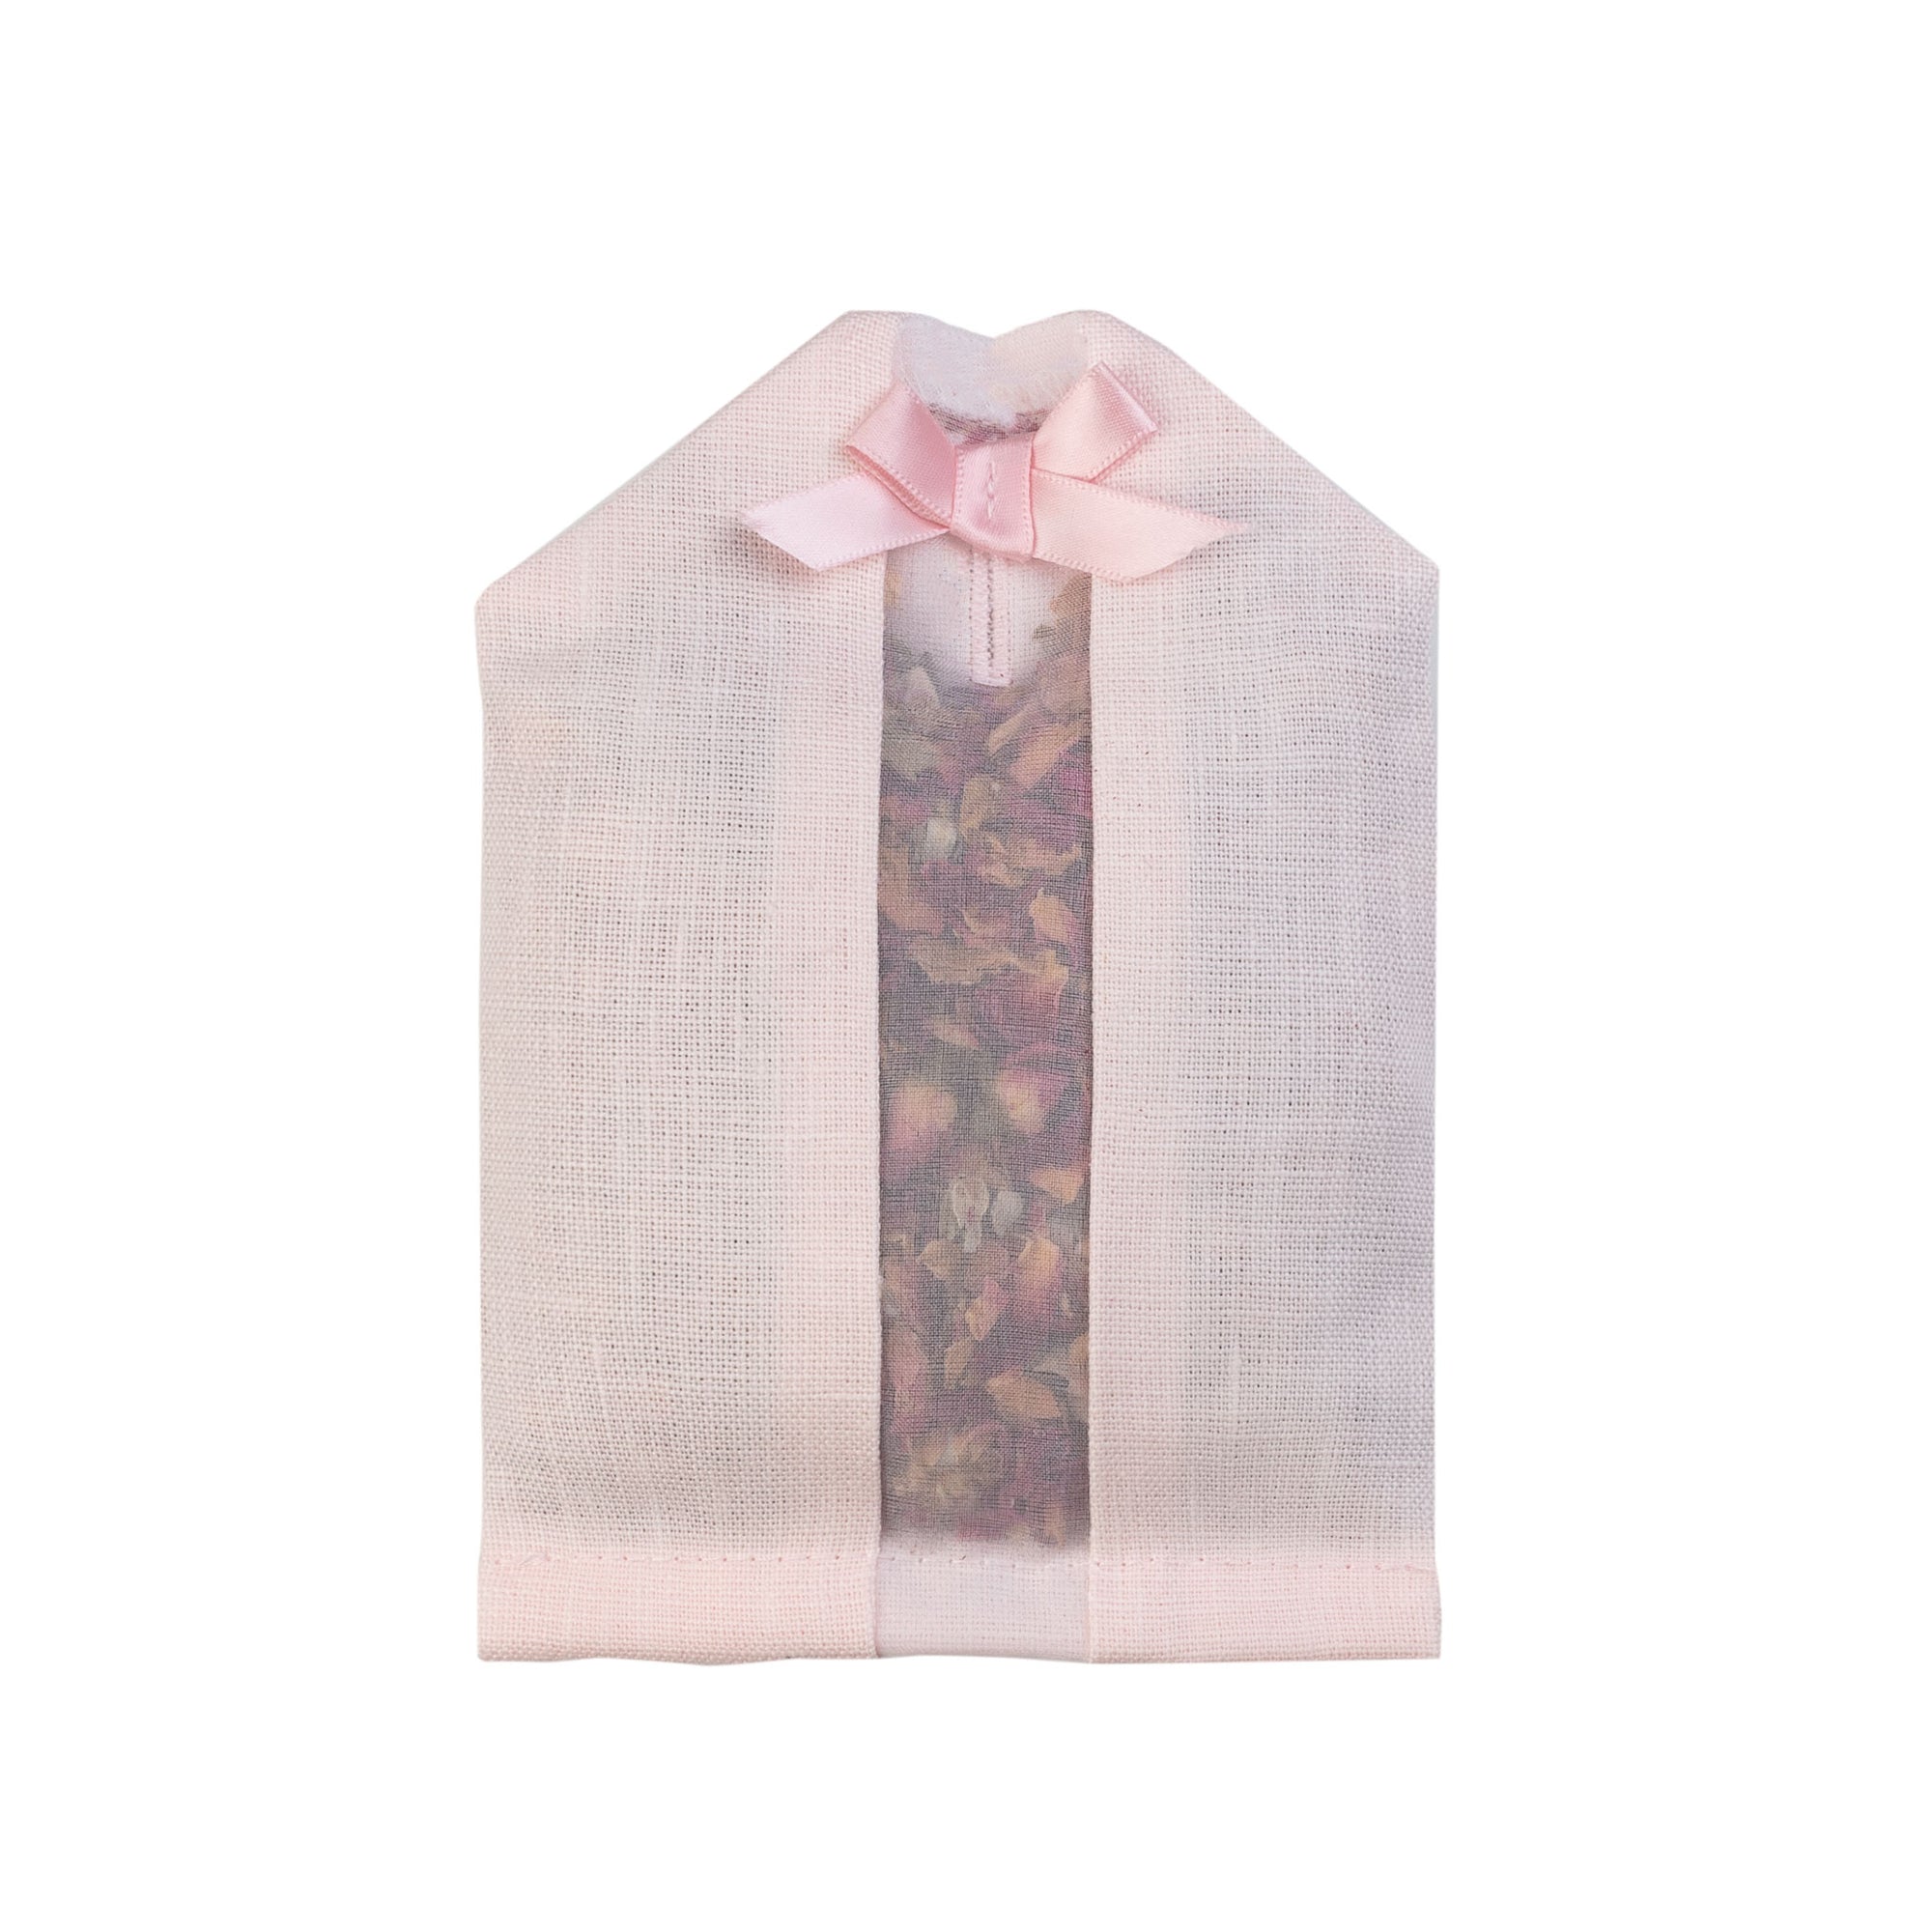 Dried rose petals filled inside of a pink linen hanger sachet 